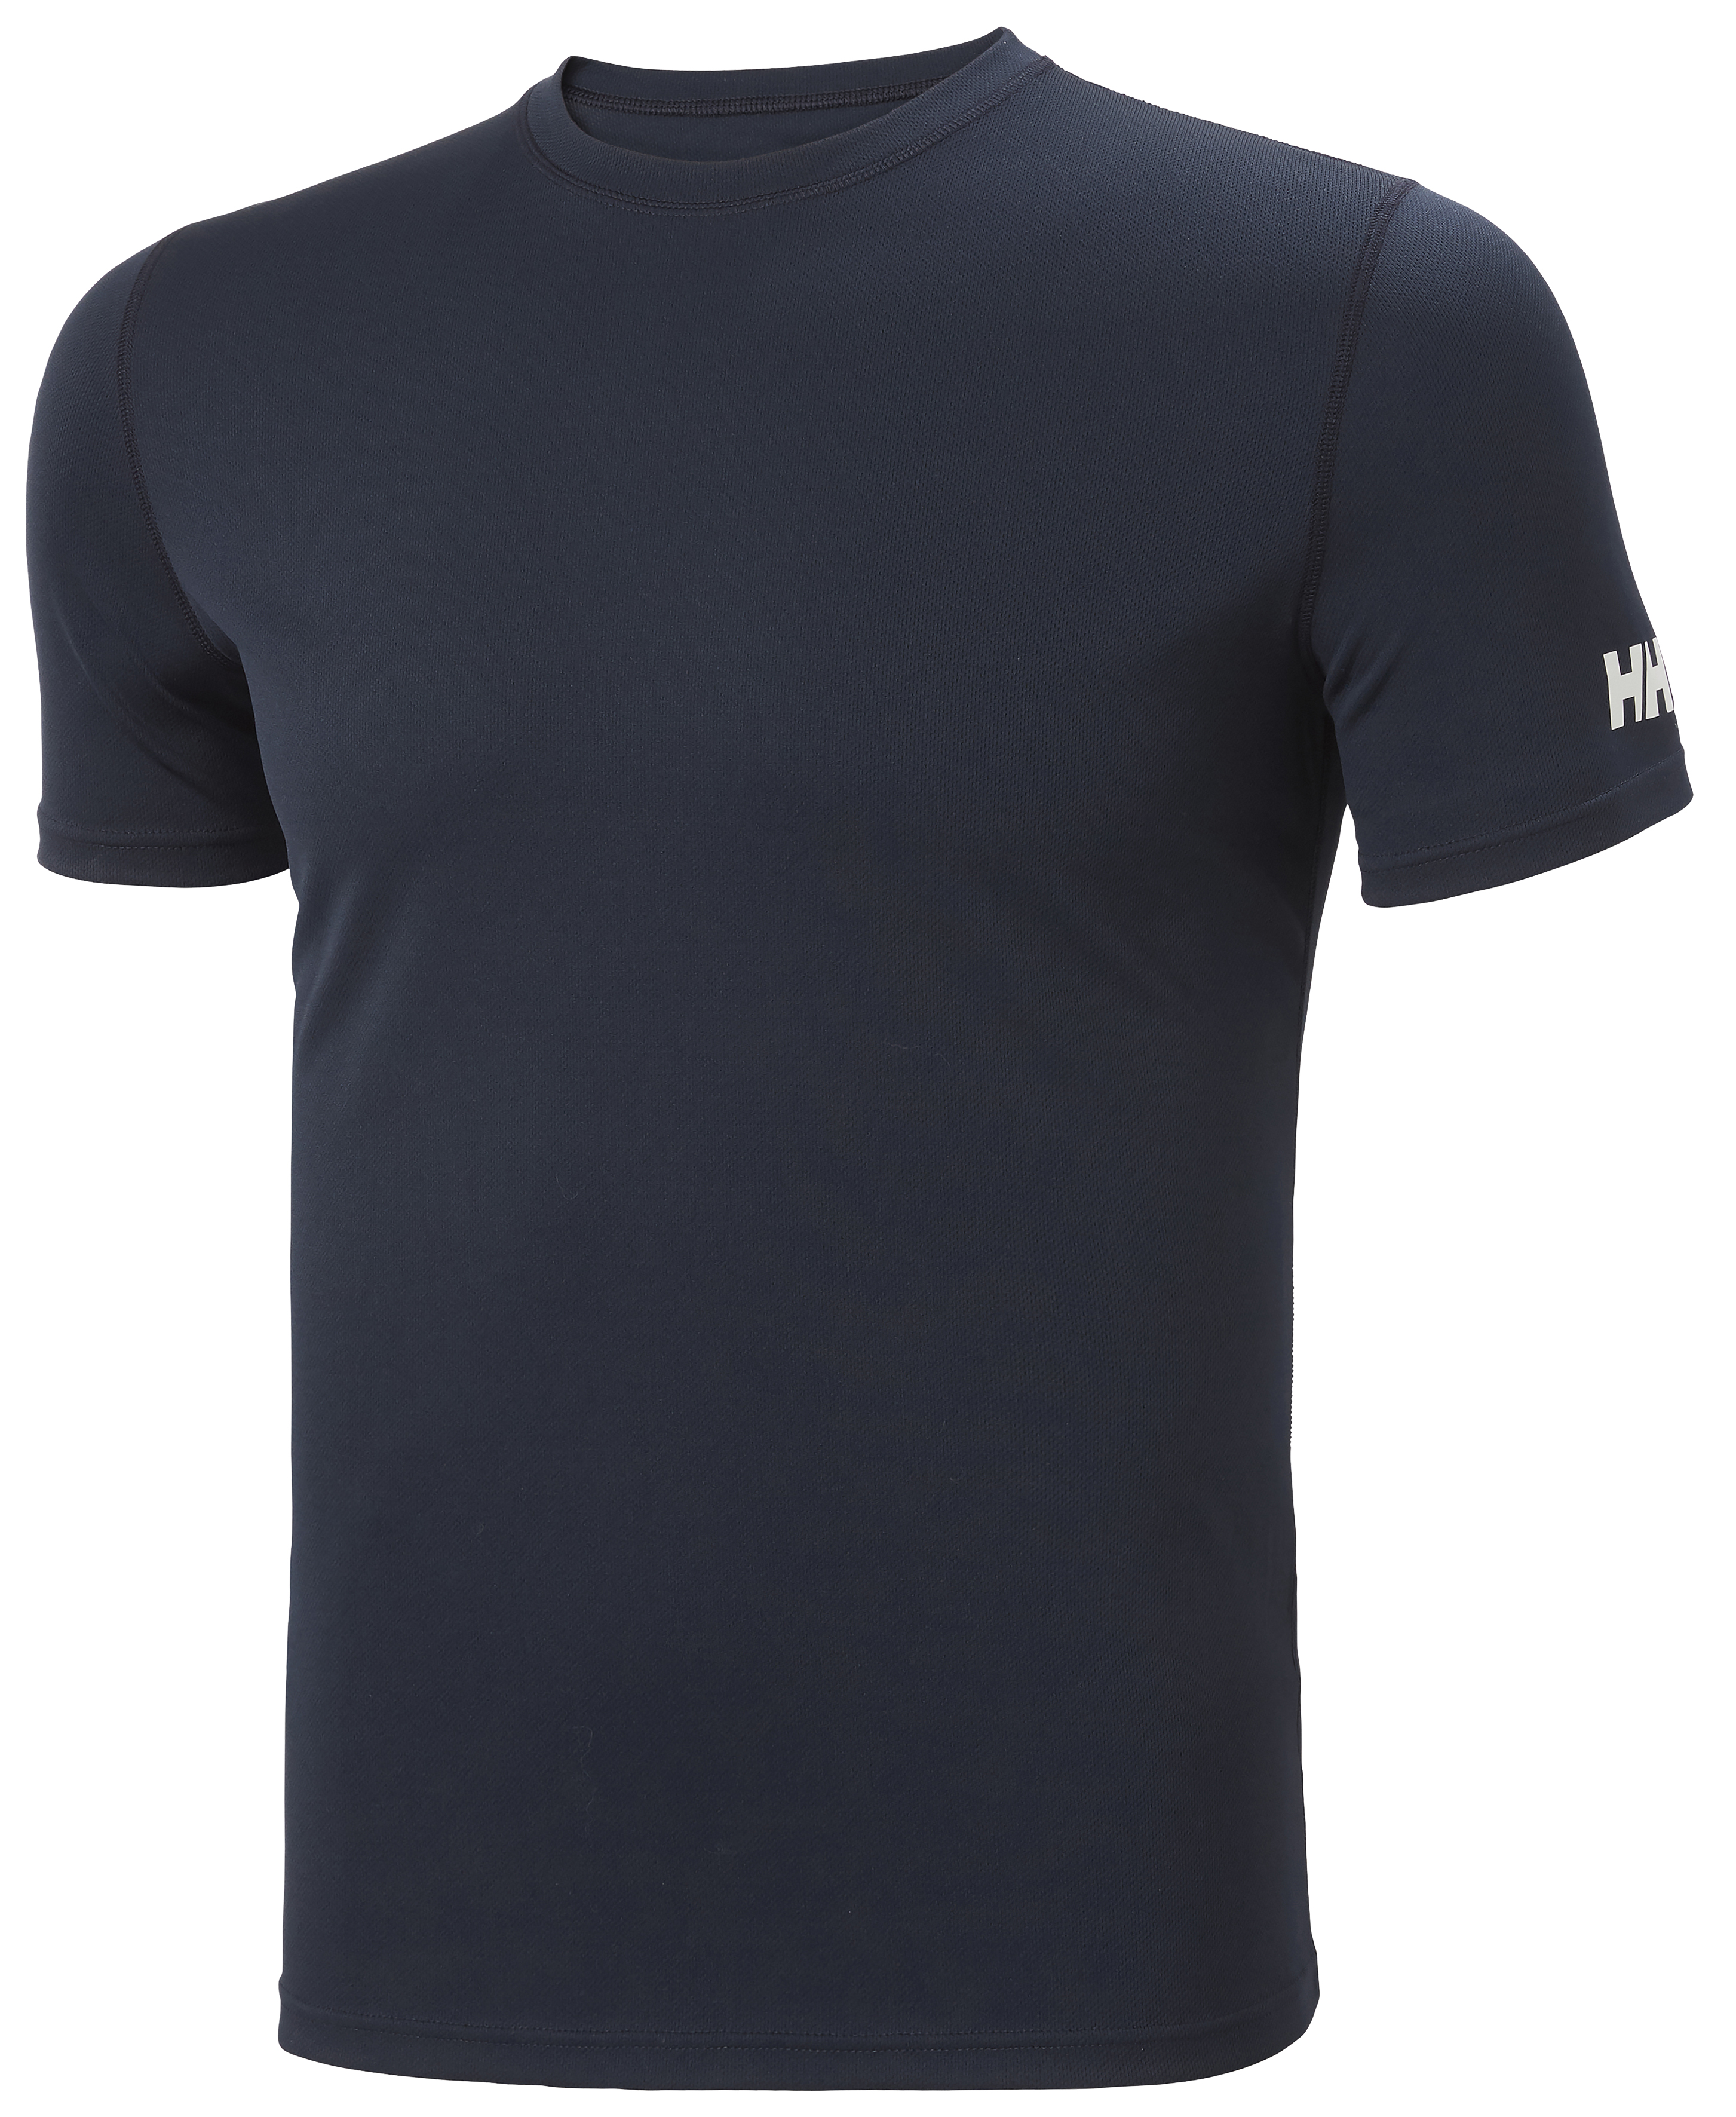 HH Tech T-Shirt dunkelblau